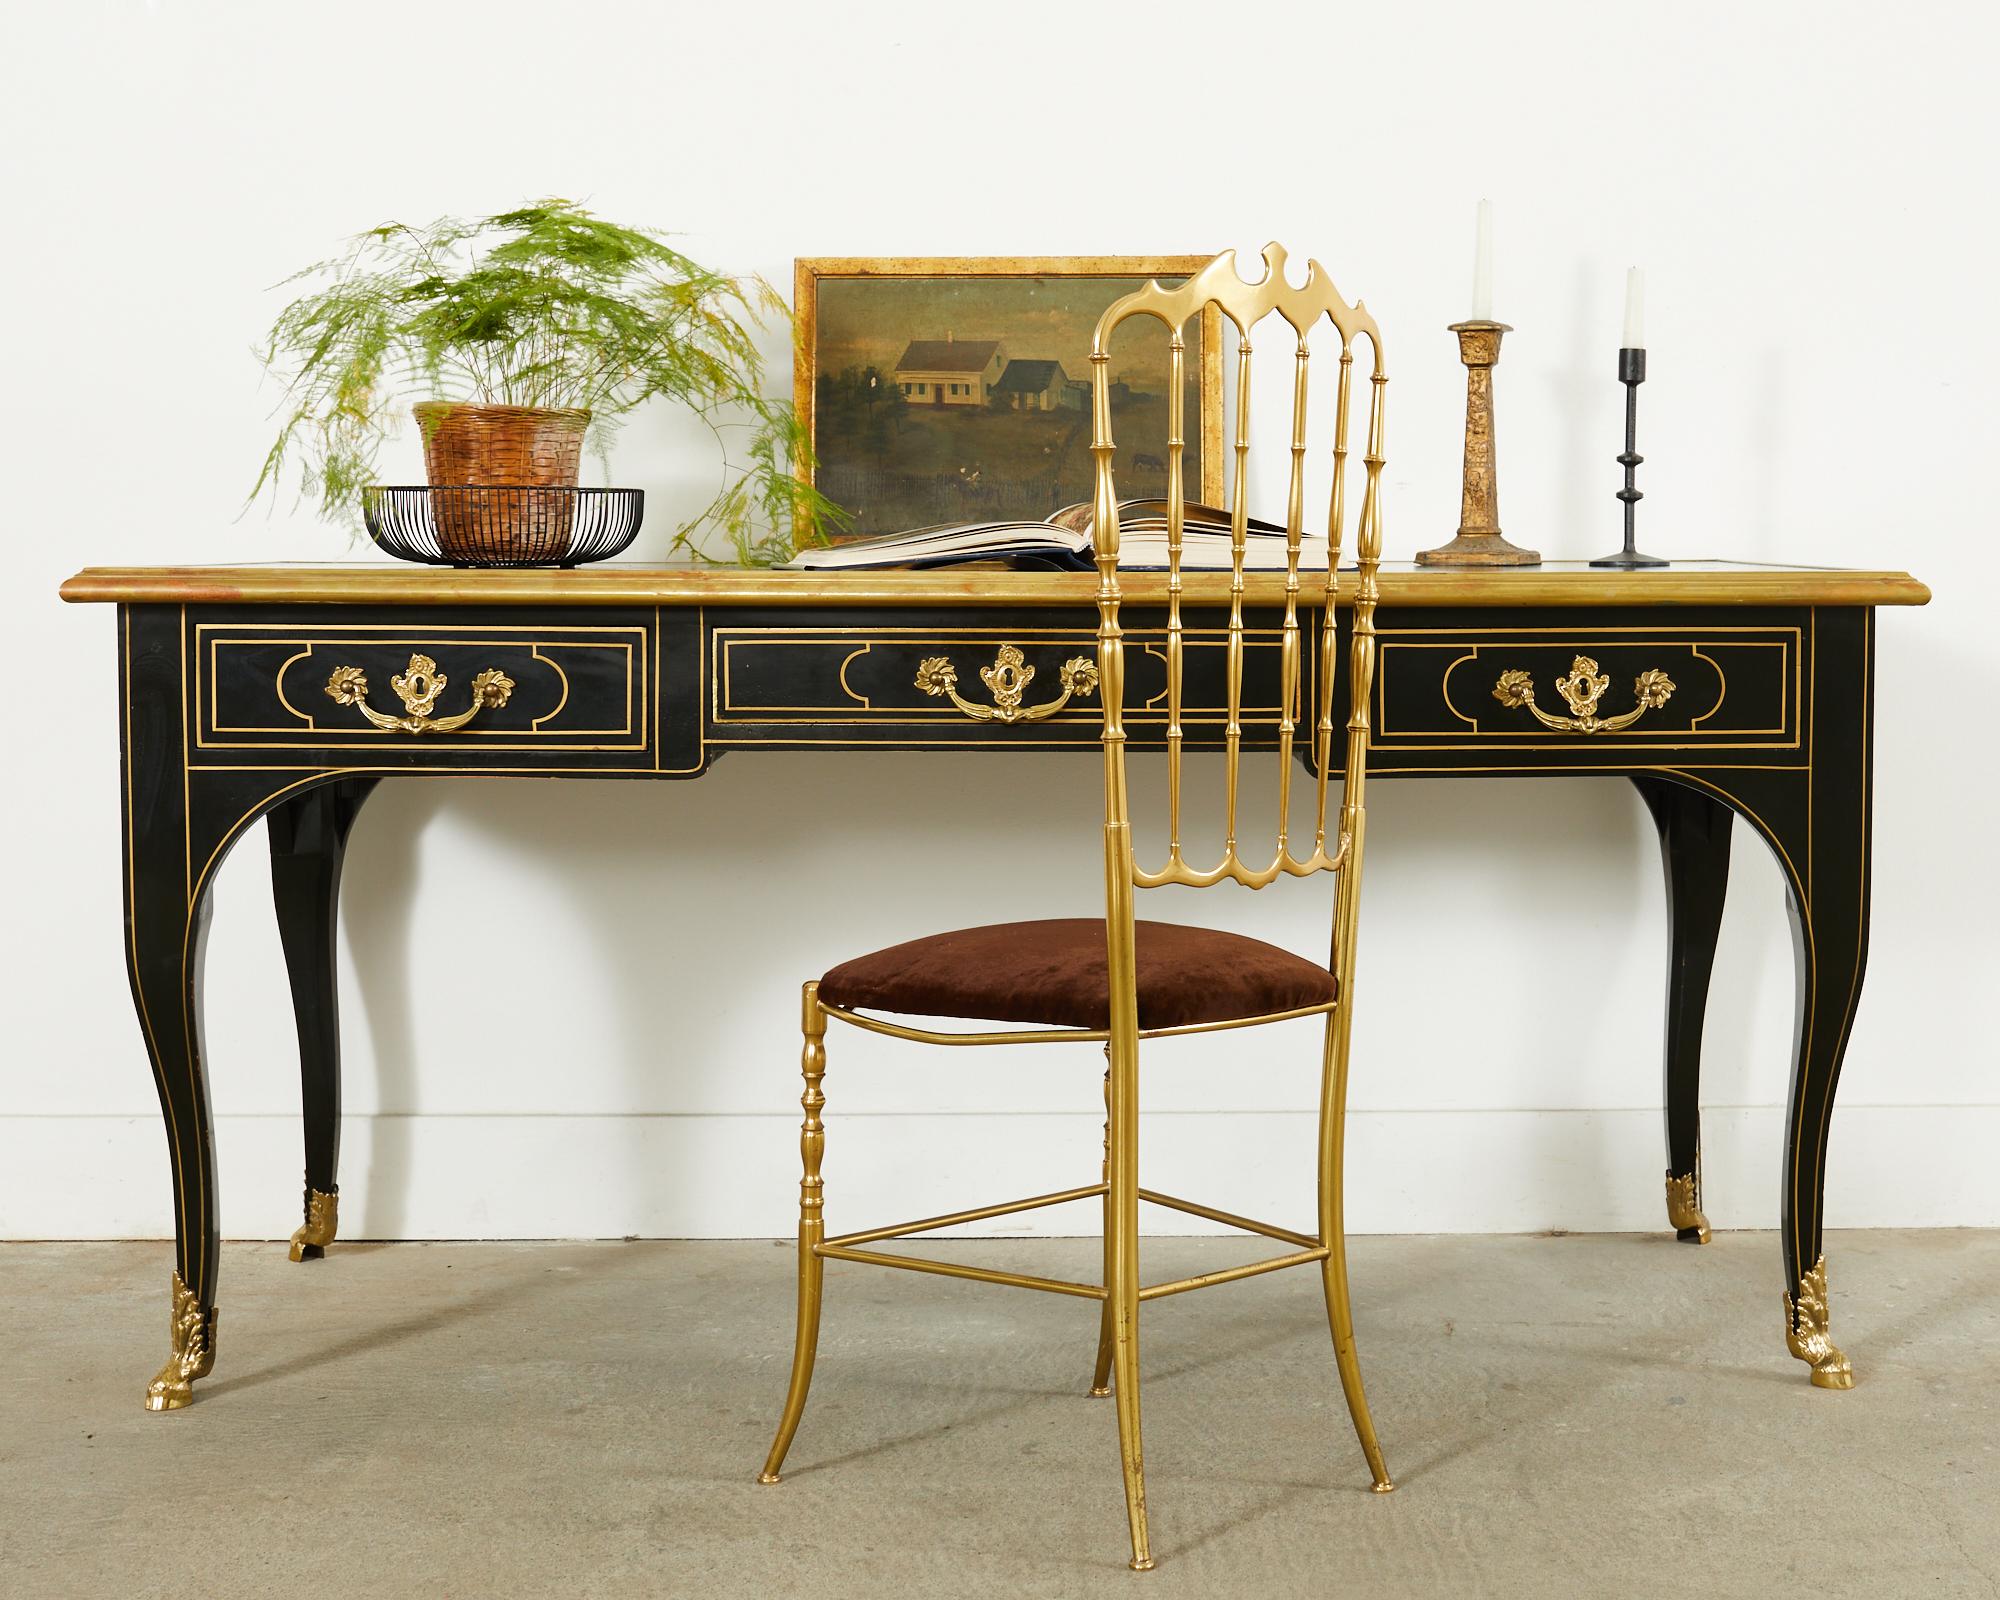 Opulenter französischer Schreibtisch im Louis XV-Stil, hergestellt von Baker Furniture. Der Schreibtisch verfügt über eine patinierte, bronzefarbene, lederbezogene Schreibfläche. Die Front des Gehäuses besteht aus drei Schubladen mit polierten,